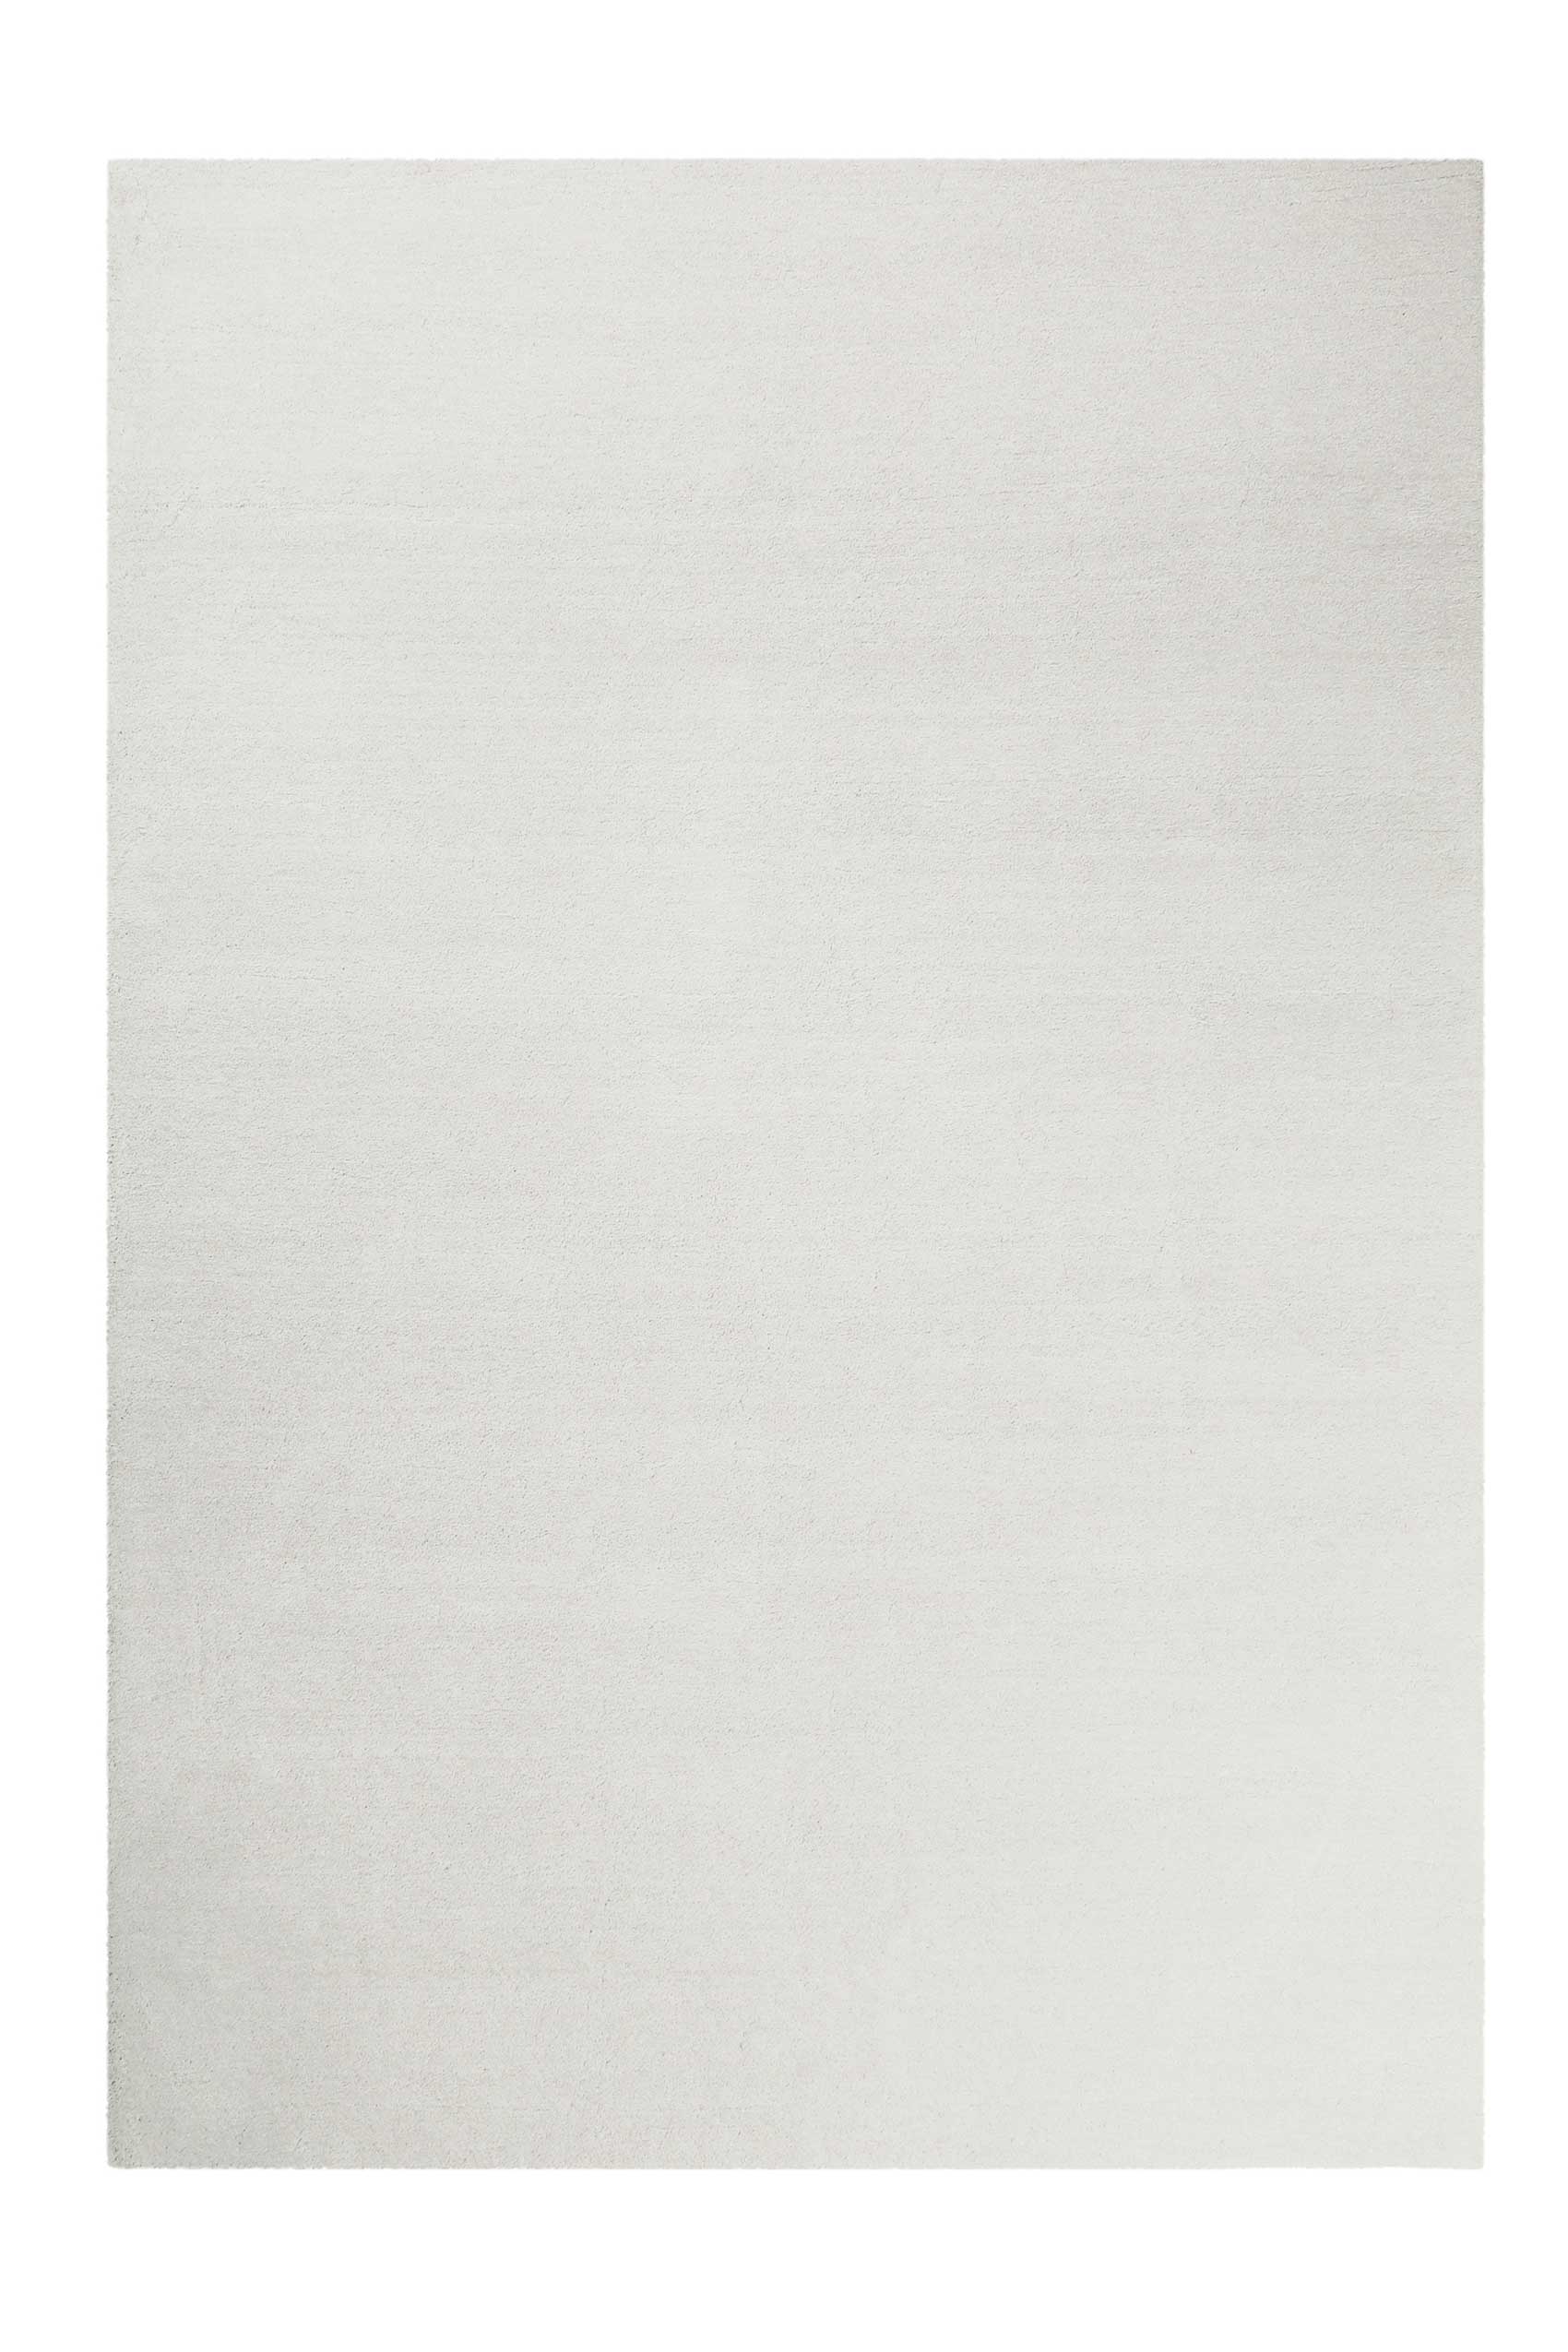 Esprit Teppich Creme Weiß Hochflor » Loft « - Ansicht 1